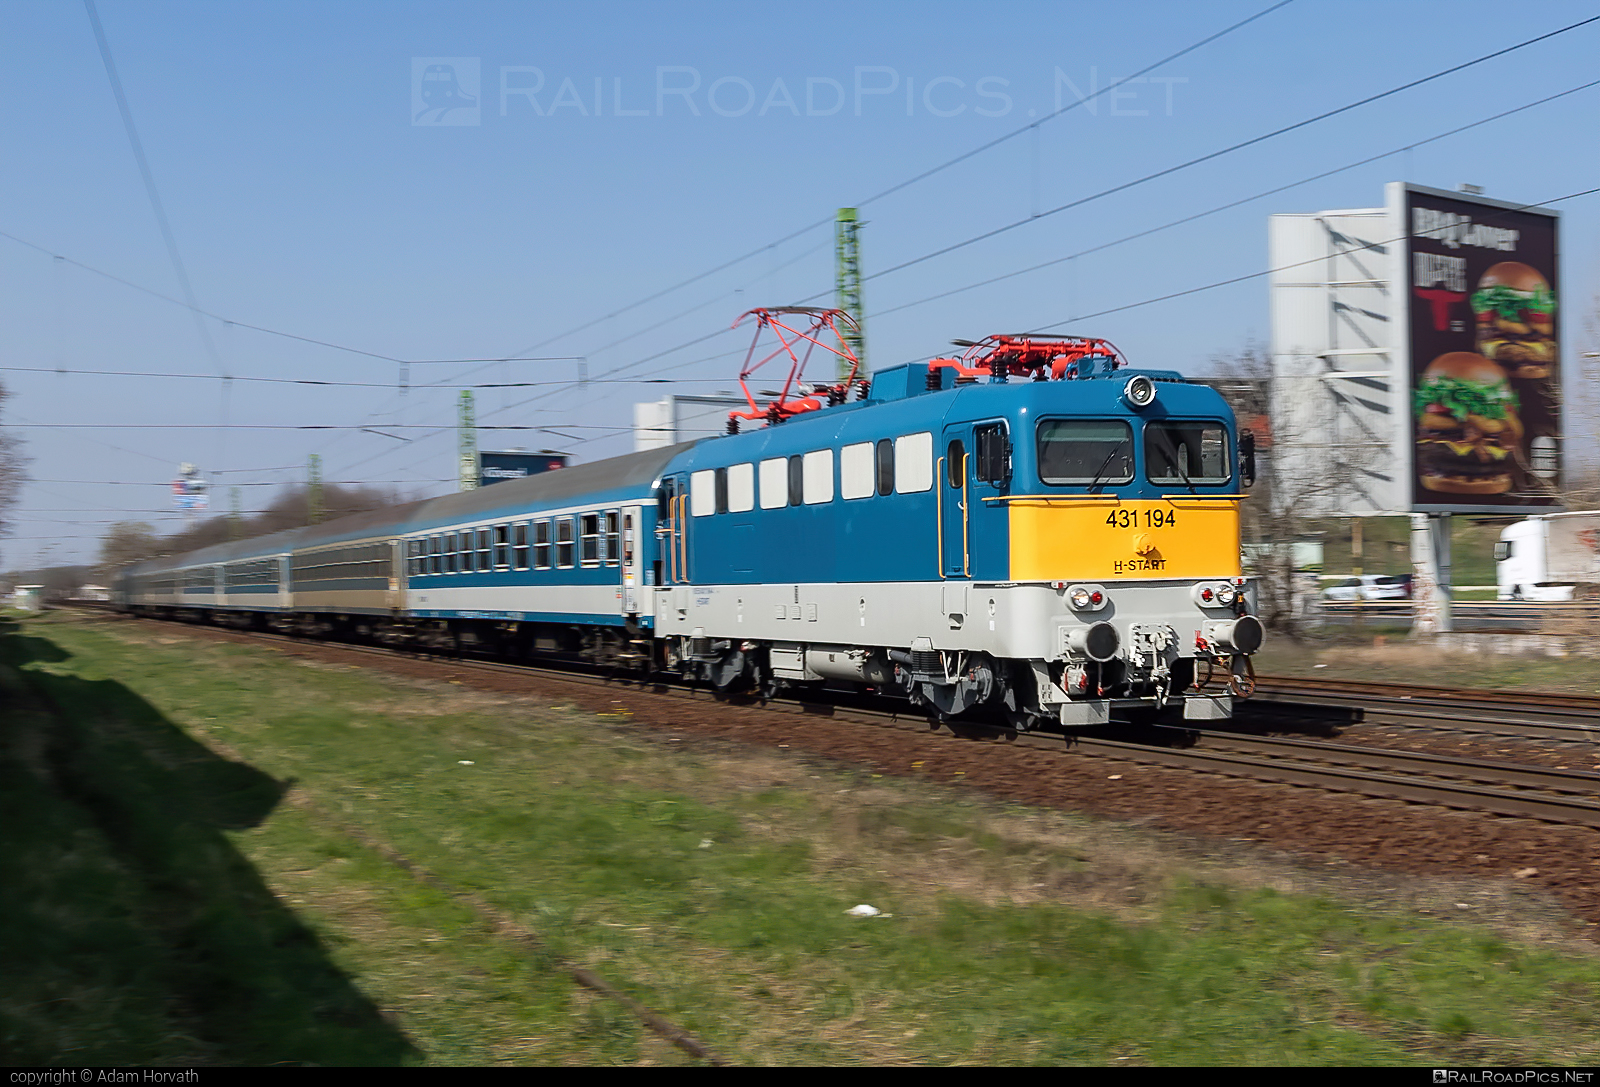 Ganz-MÁVAG VM14-15 - 431 194 operated by MÁV-START ZRt. #ganz43 #ganz431 #ganzmavag #ganzmavag43 #ganzmavag431 #ganzmavagvm1415 #mav #mavstart #mavstartzrt #v43locomotive